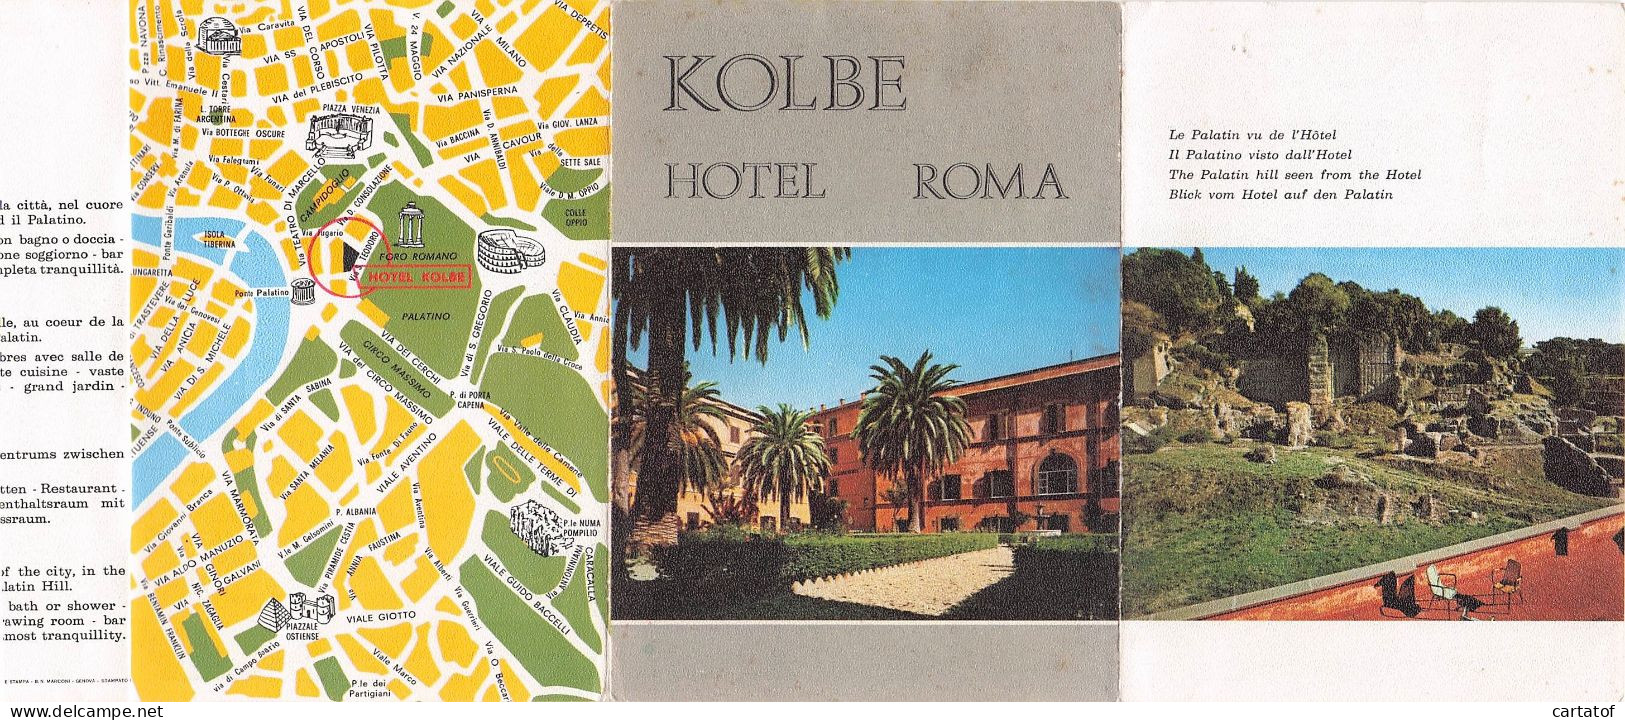 KOLBE HOTEL .  ROMA . - Hotelsleutels (kaarten)